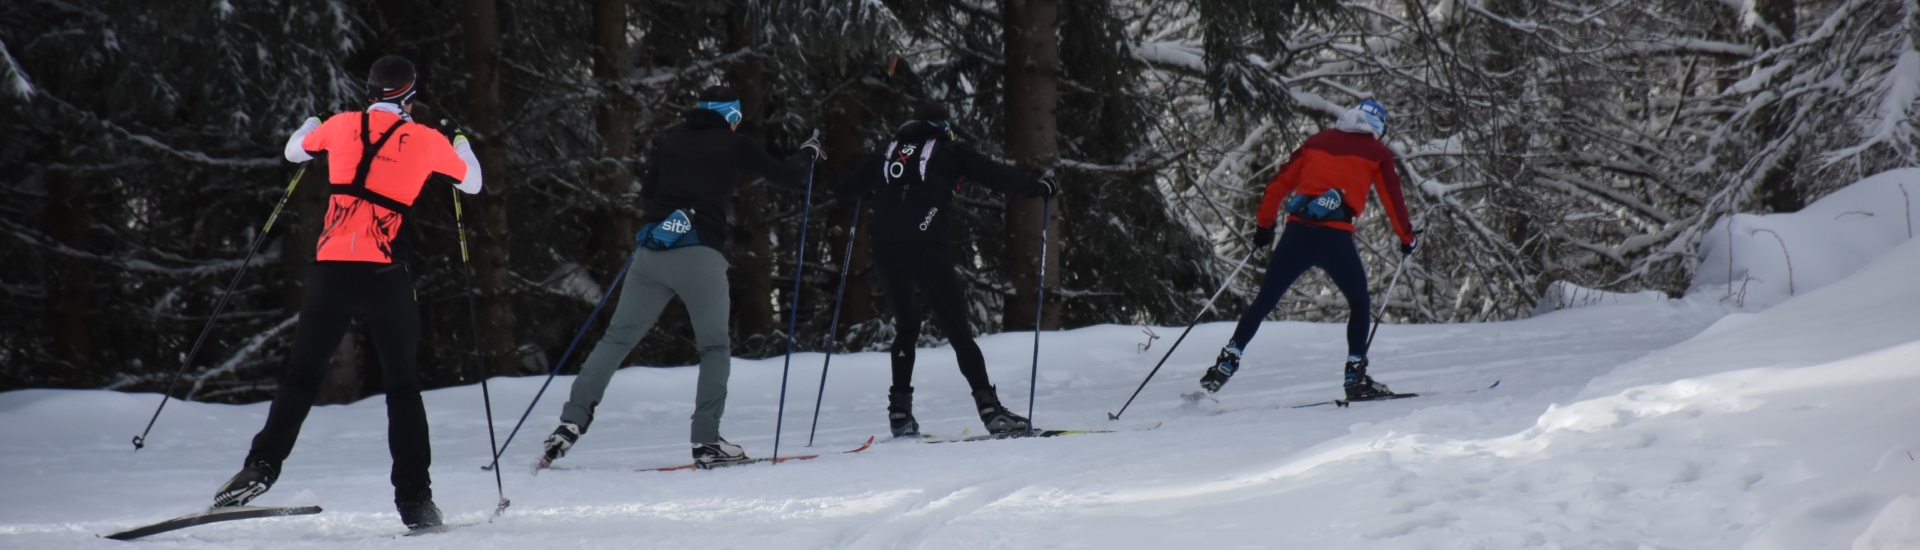 Les 9 accessoires indispensables pour le ski de fond